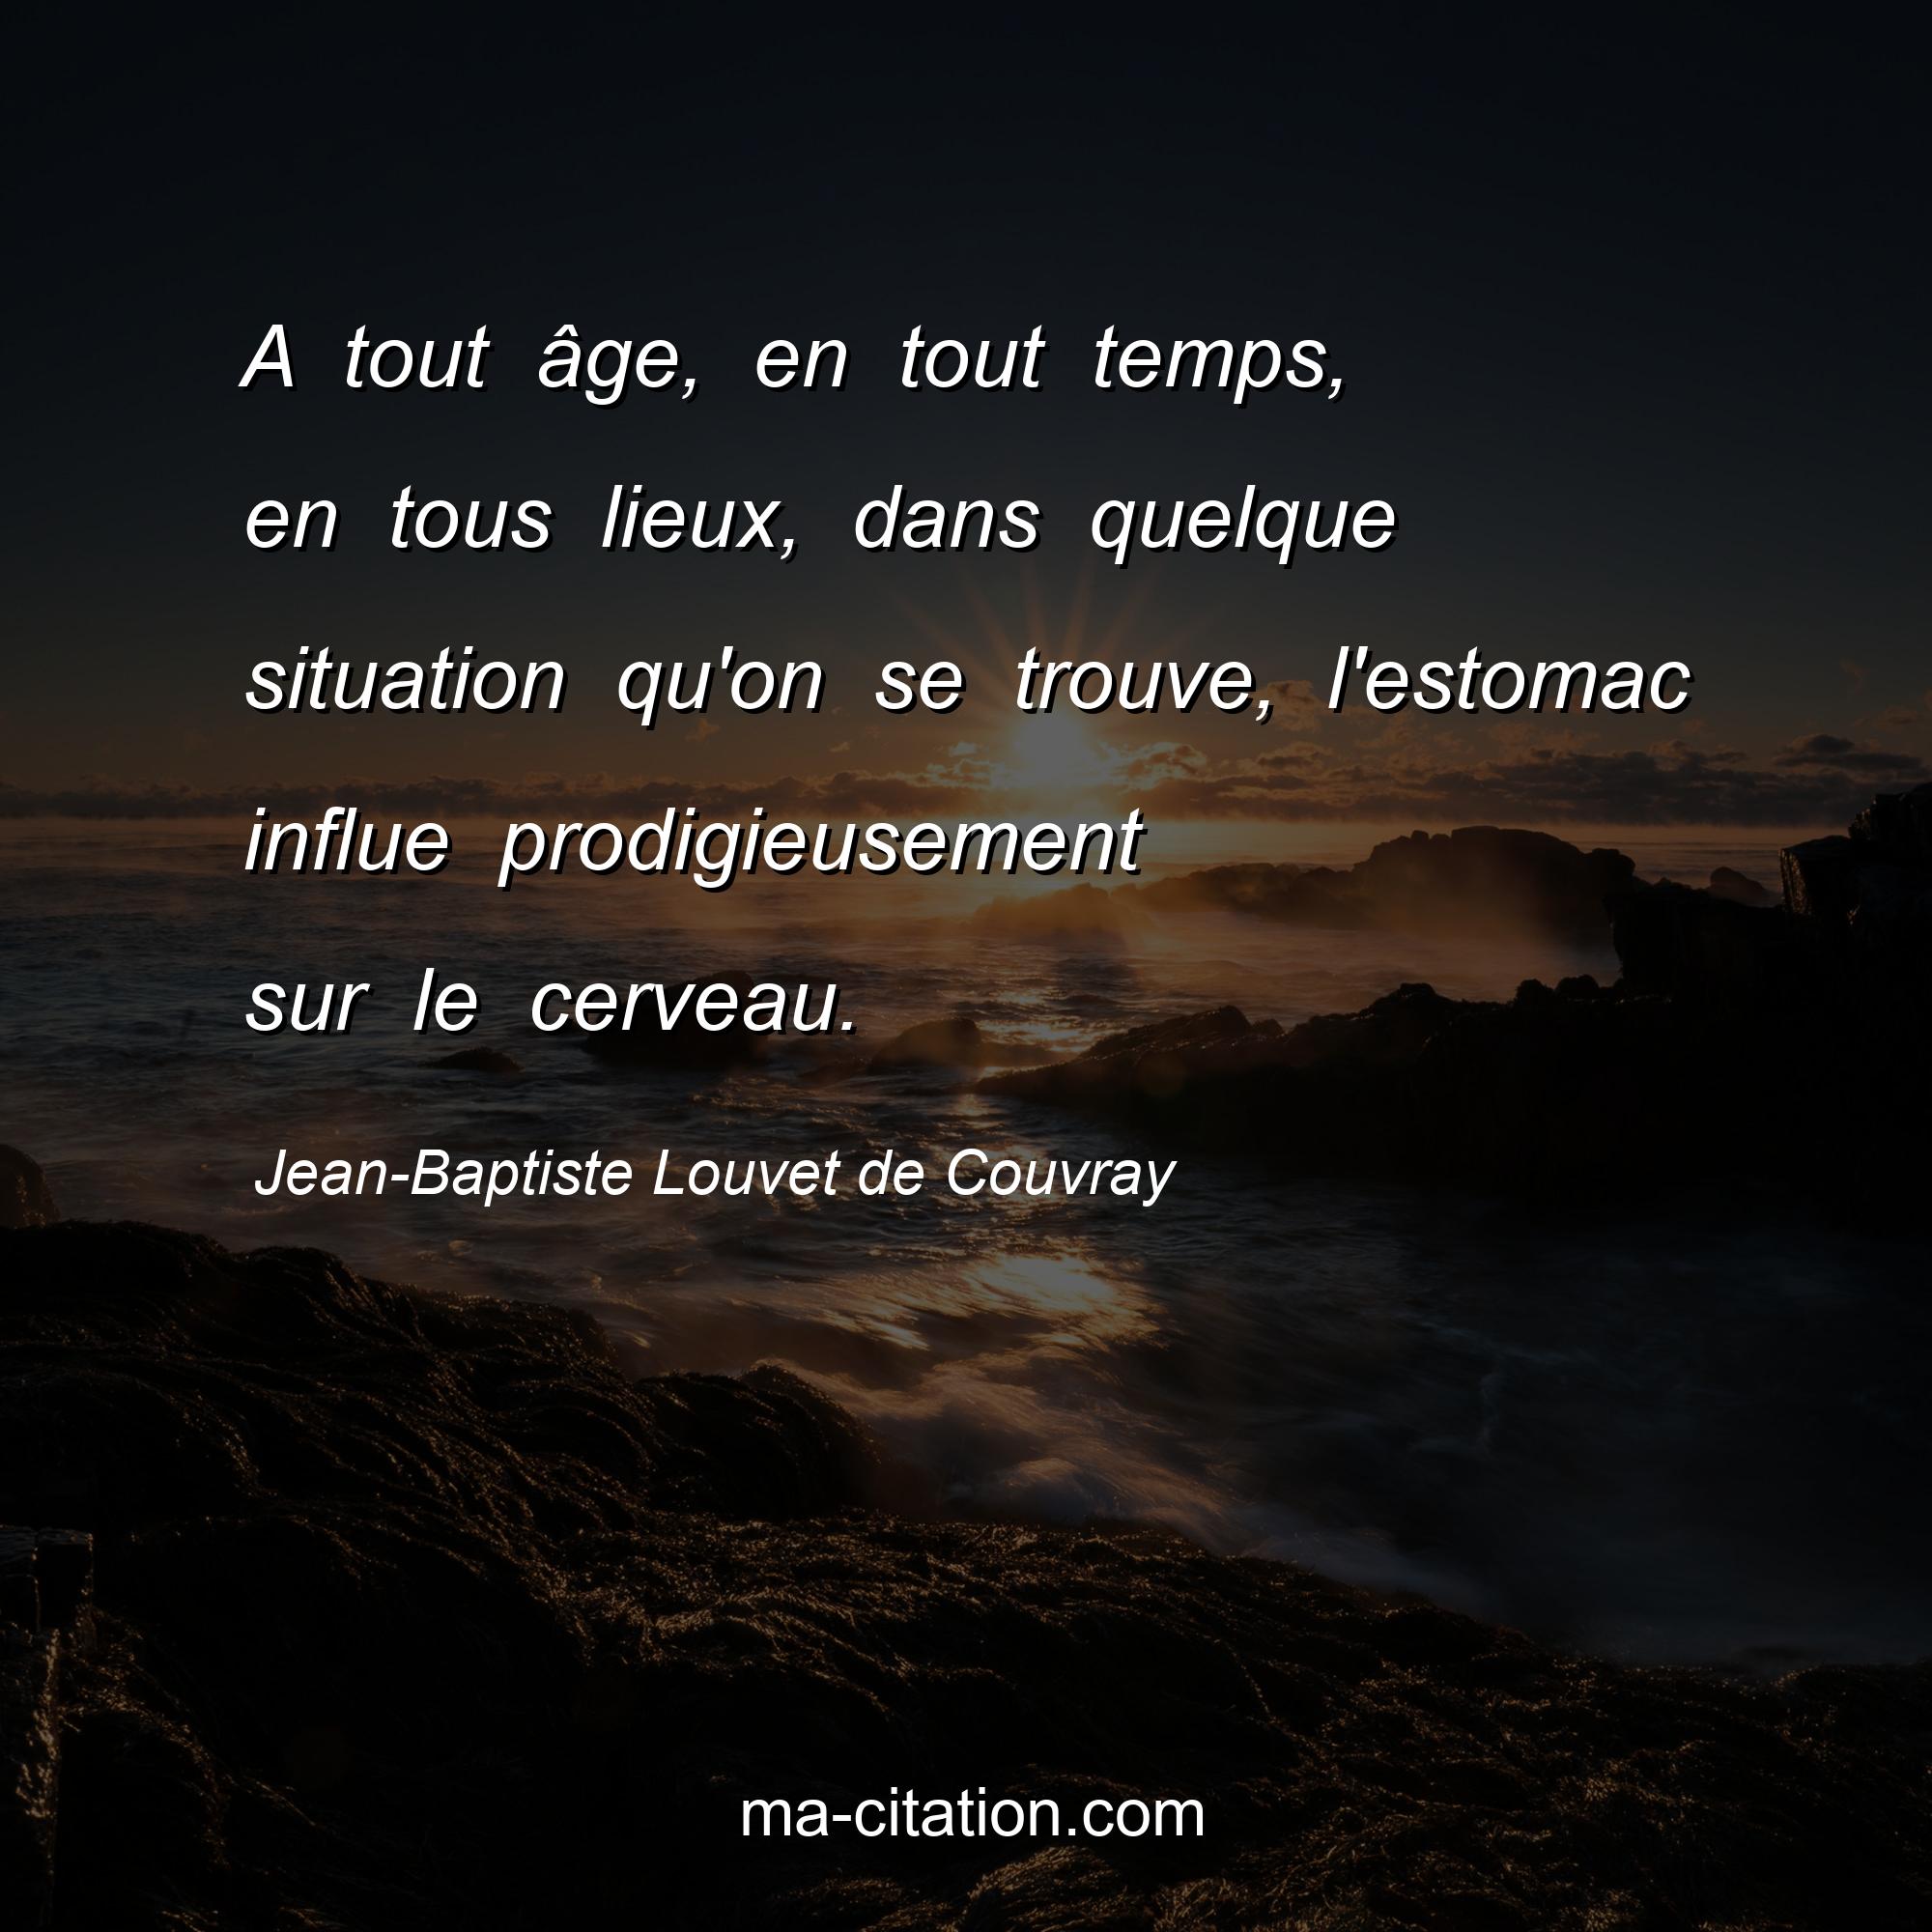 Jean-Baptiste Louvet de Couvray : A tout âge, en tout temps, en tous lieux, dans quelque situation qu'on se trouve, l'estomac influe prodigieusement sur le cerveau.